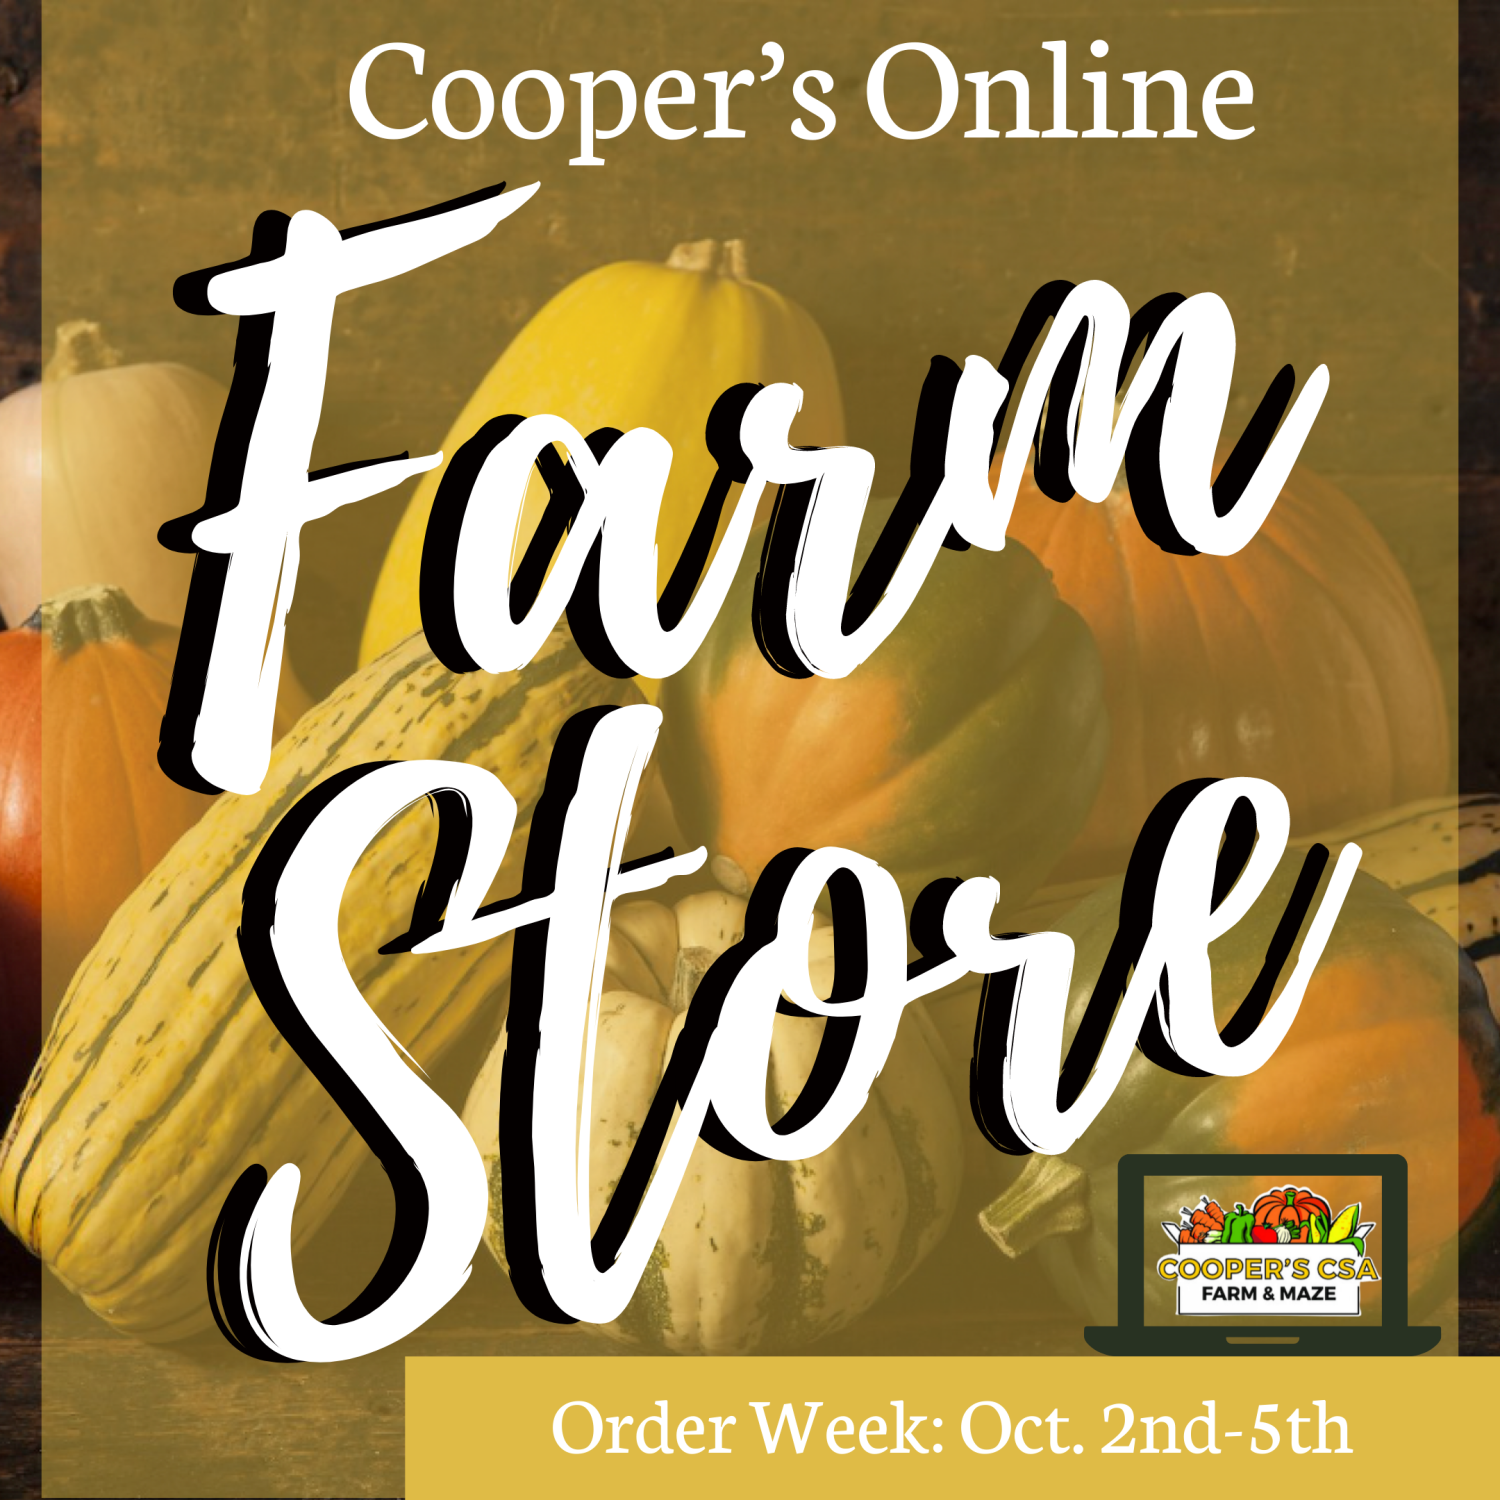 Next Happening: Coopers CSA Online FarmStore- Order week 18